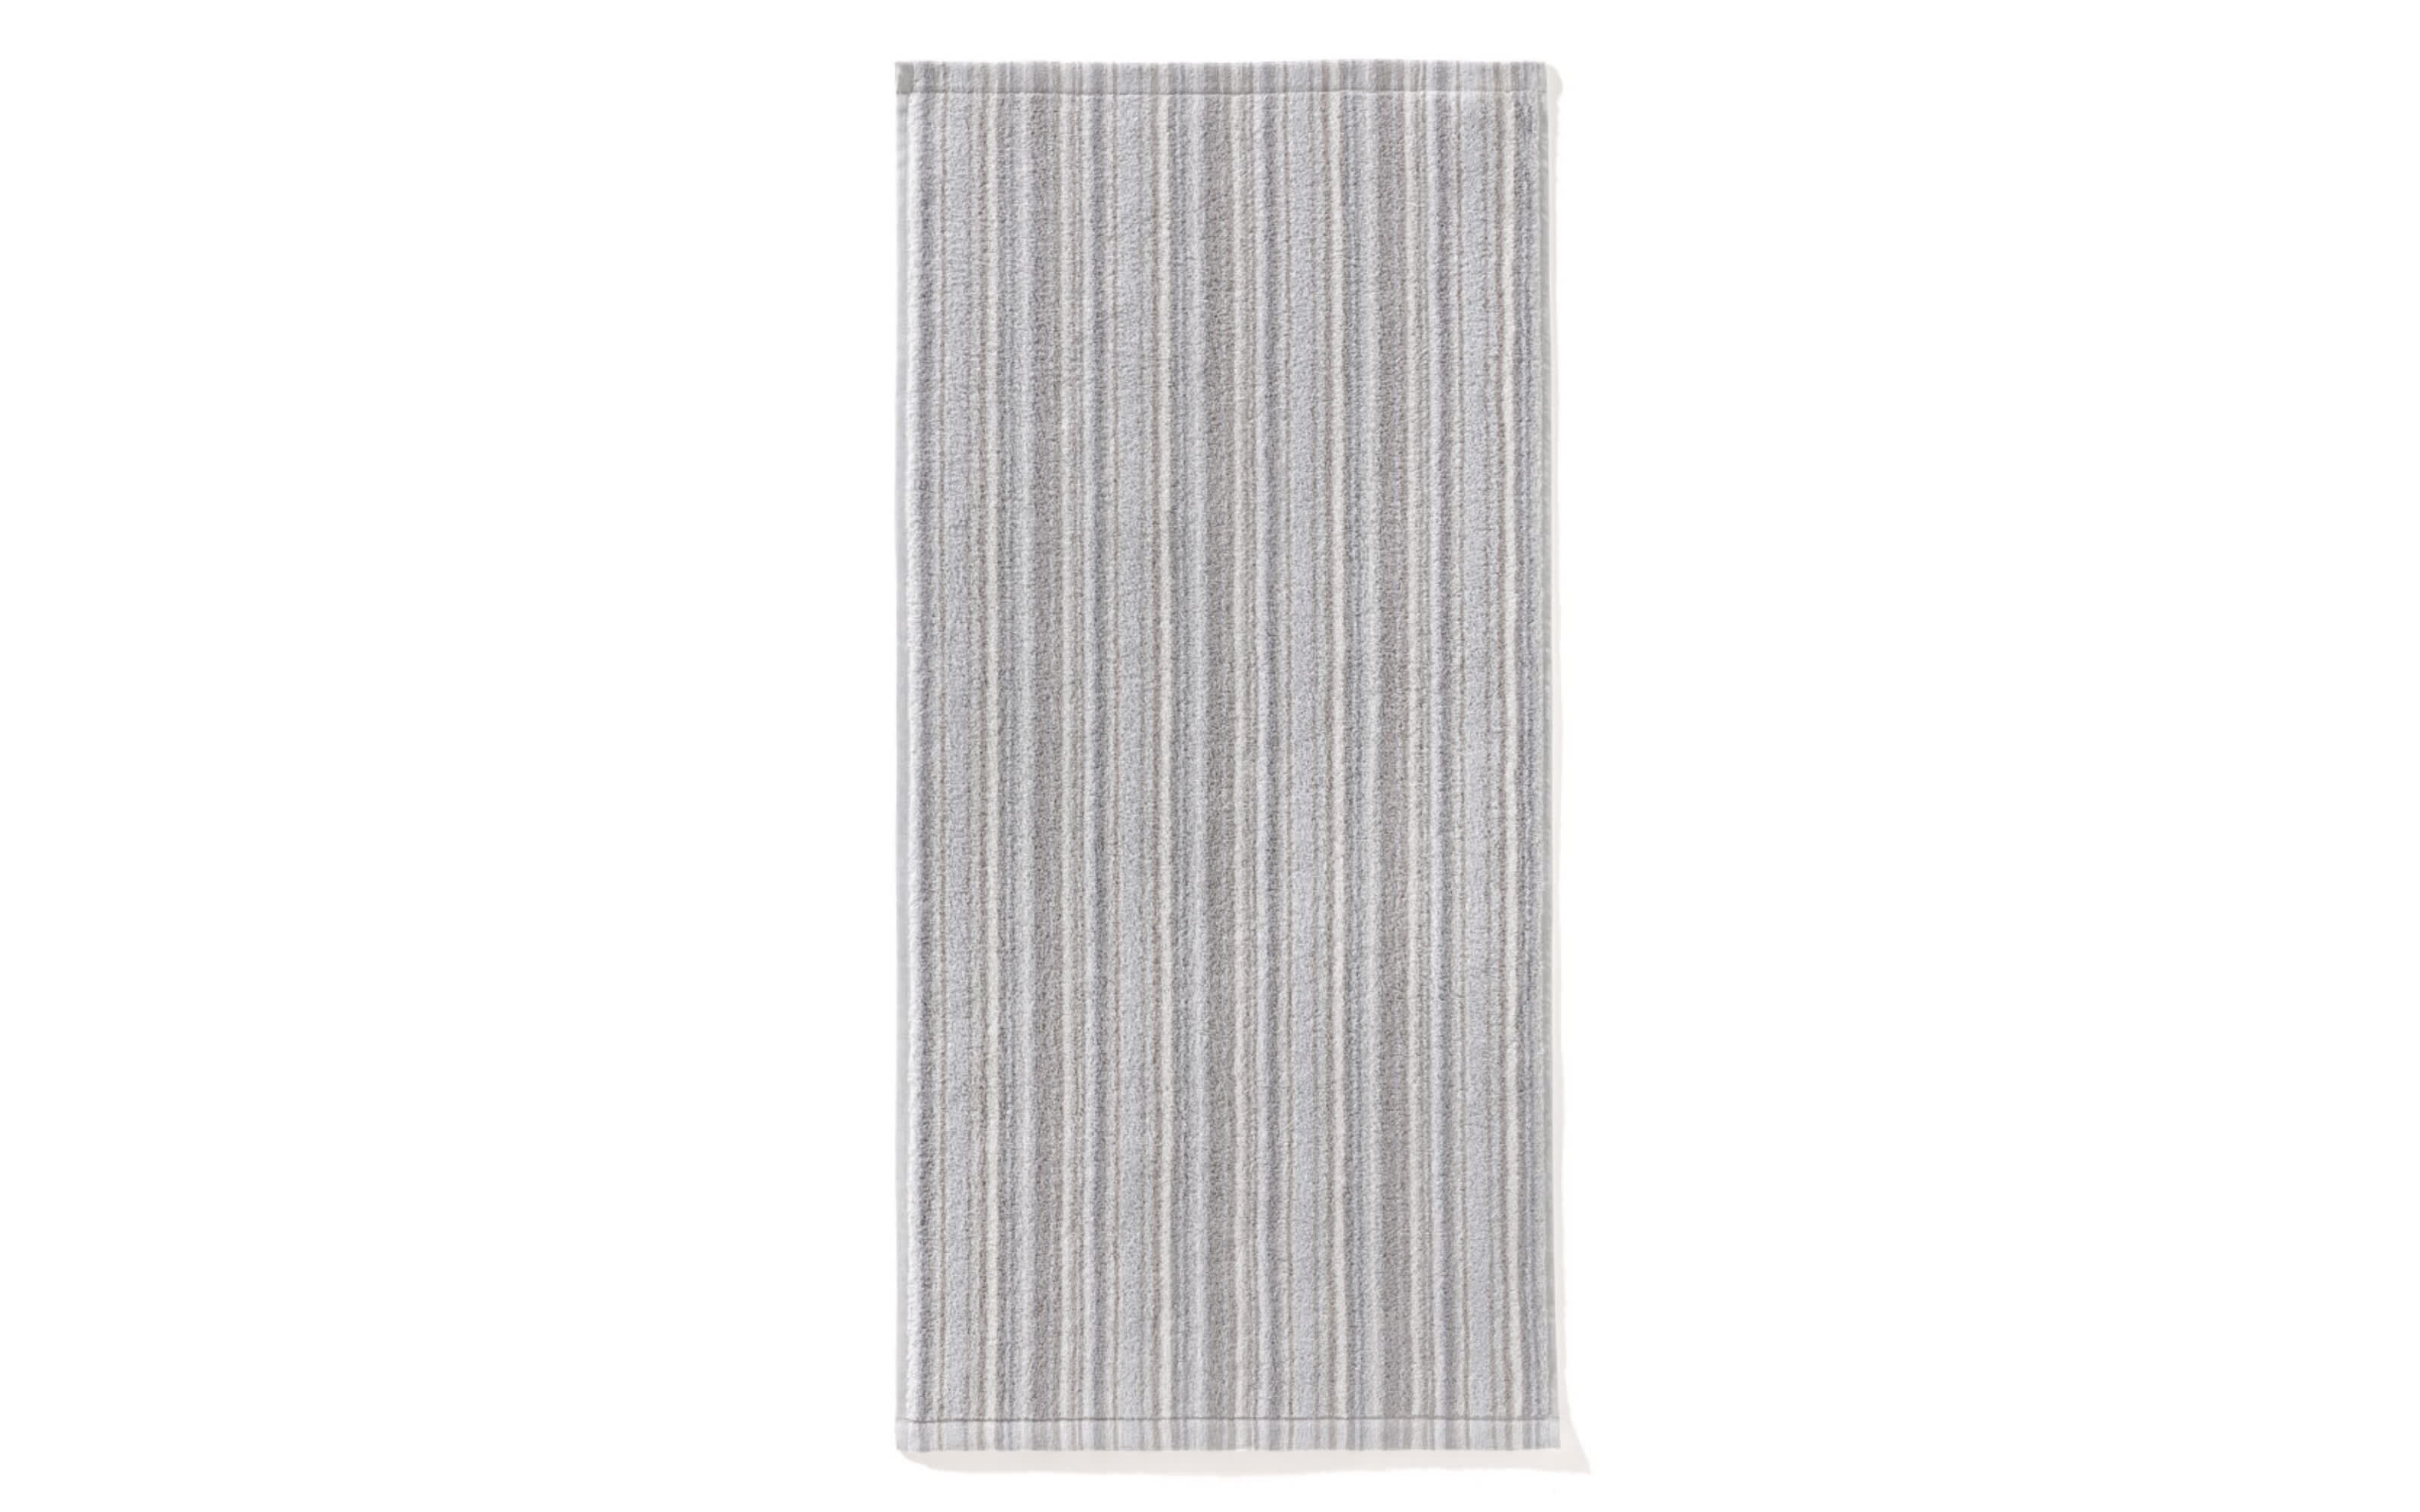 Handtuch, grau/anthrazit gestreift, 50 cm x 100 cm online bei Hardeck kaufen